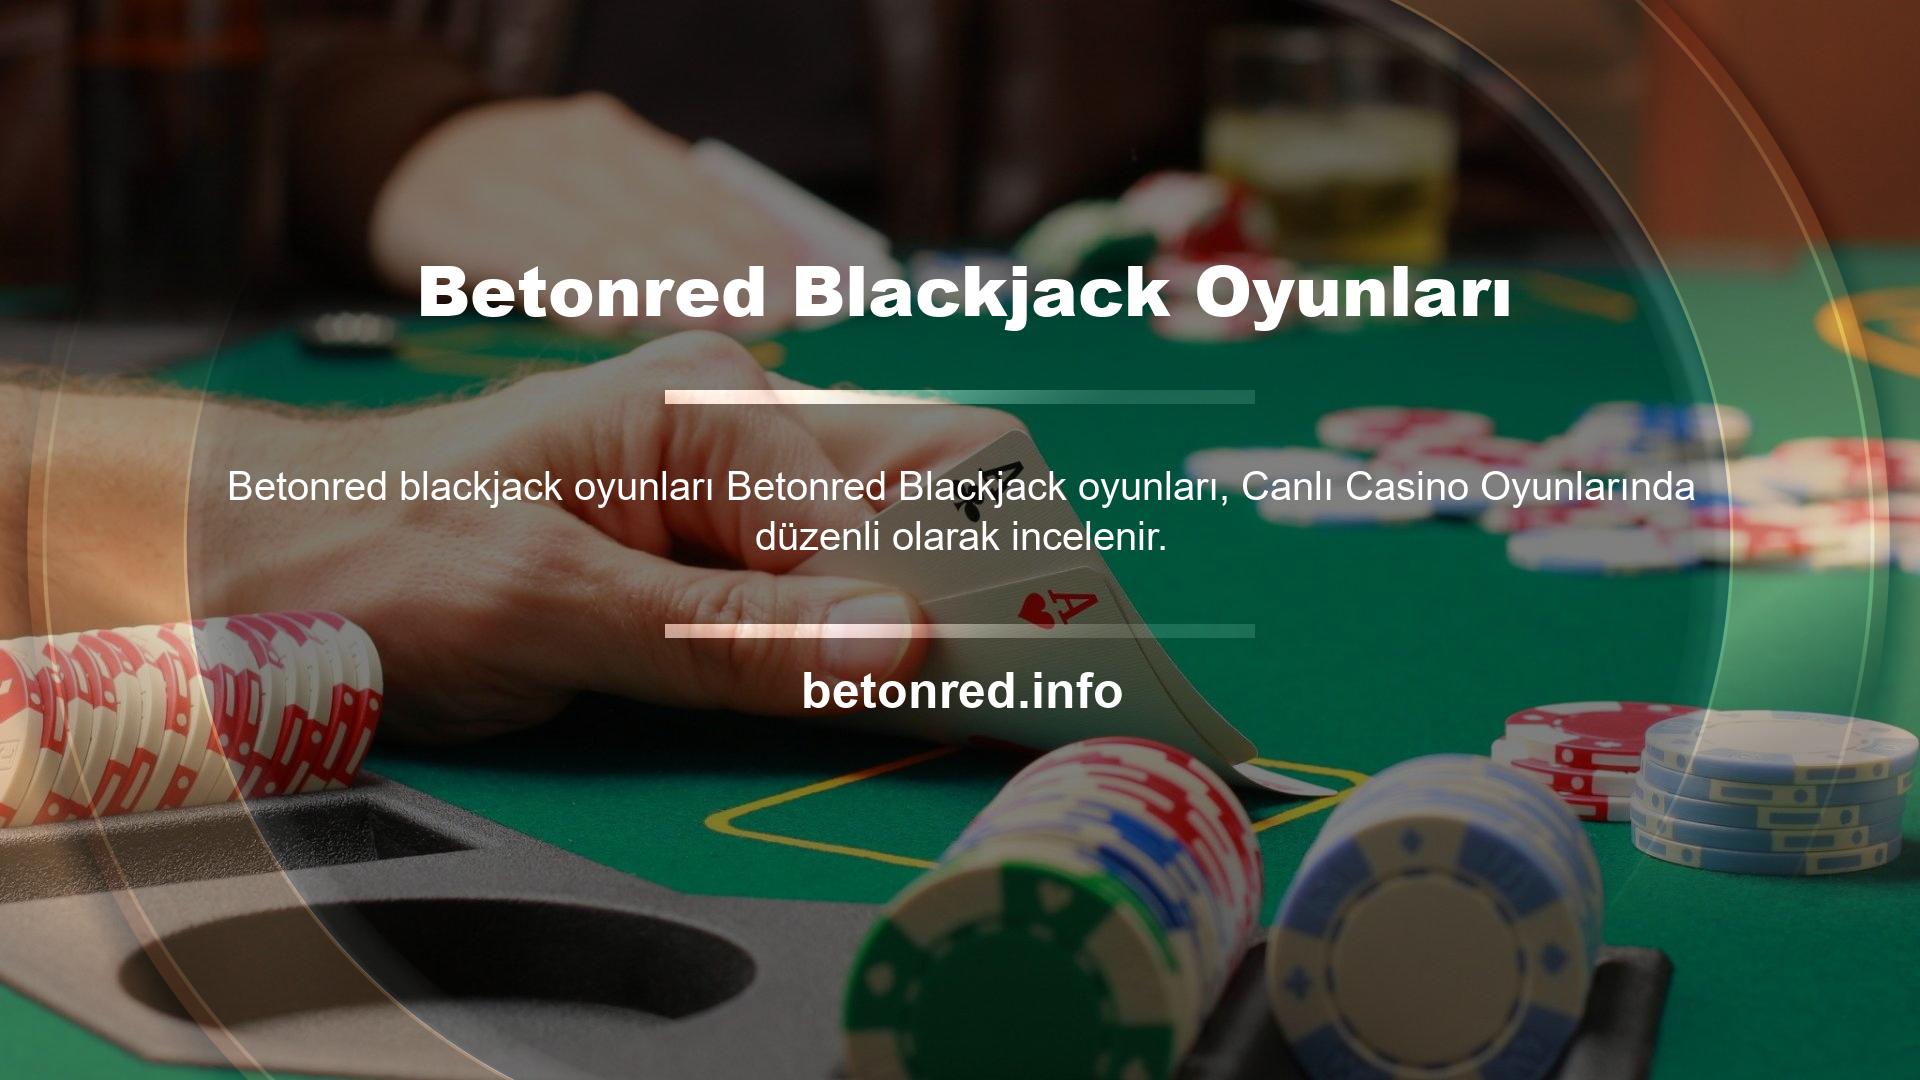 Betonred blackjack oyunları